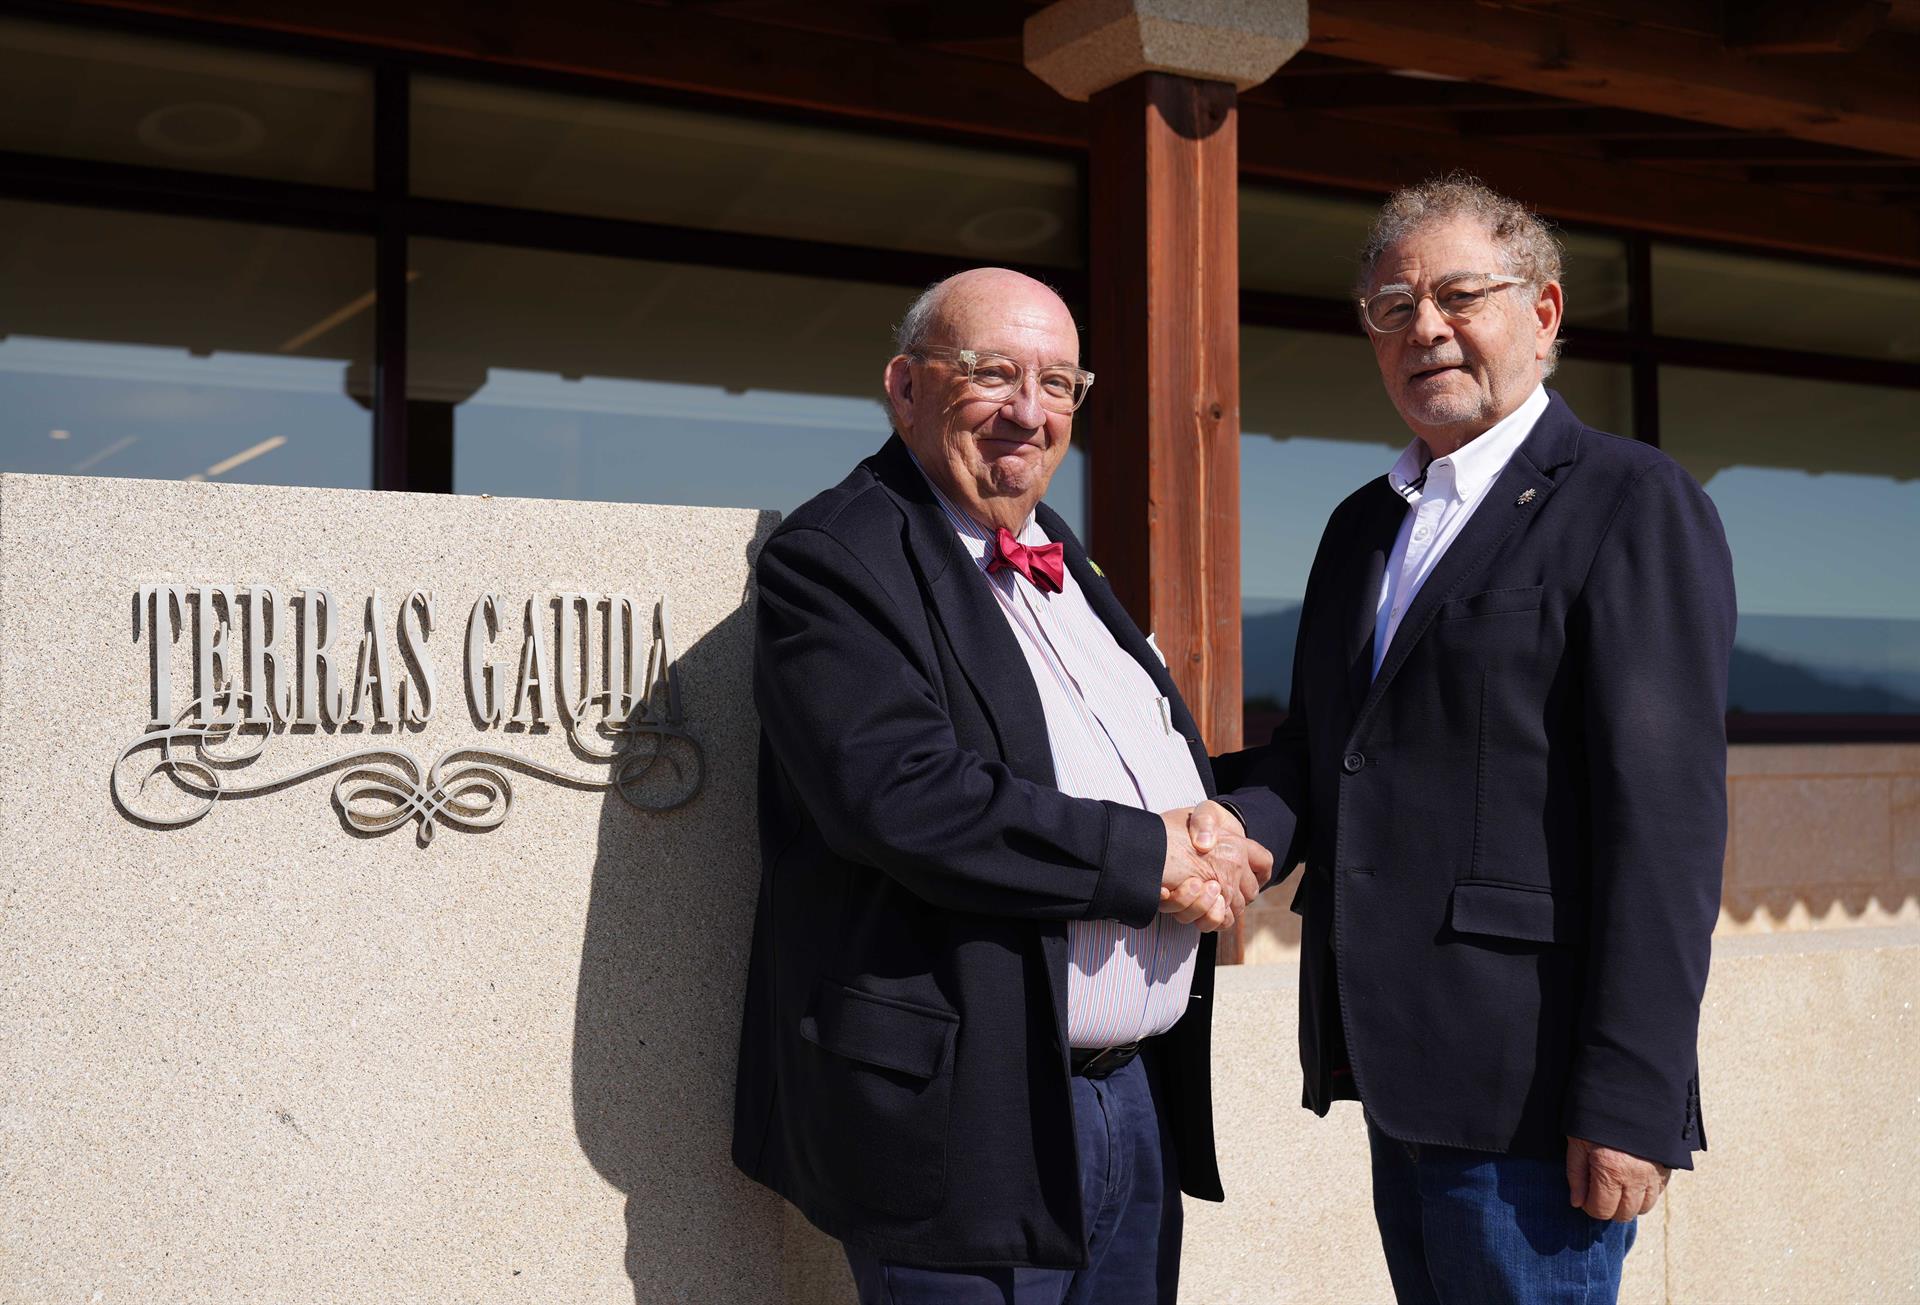 El presidente del Grupo Terras Gauda, José María Fonseca, y el presidente de Bodegas Gargalo, Roberto Verino. - TERRAS GAUDA